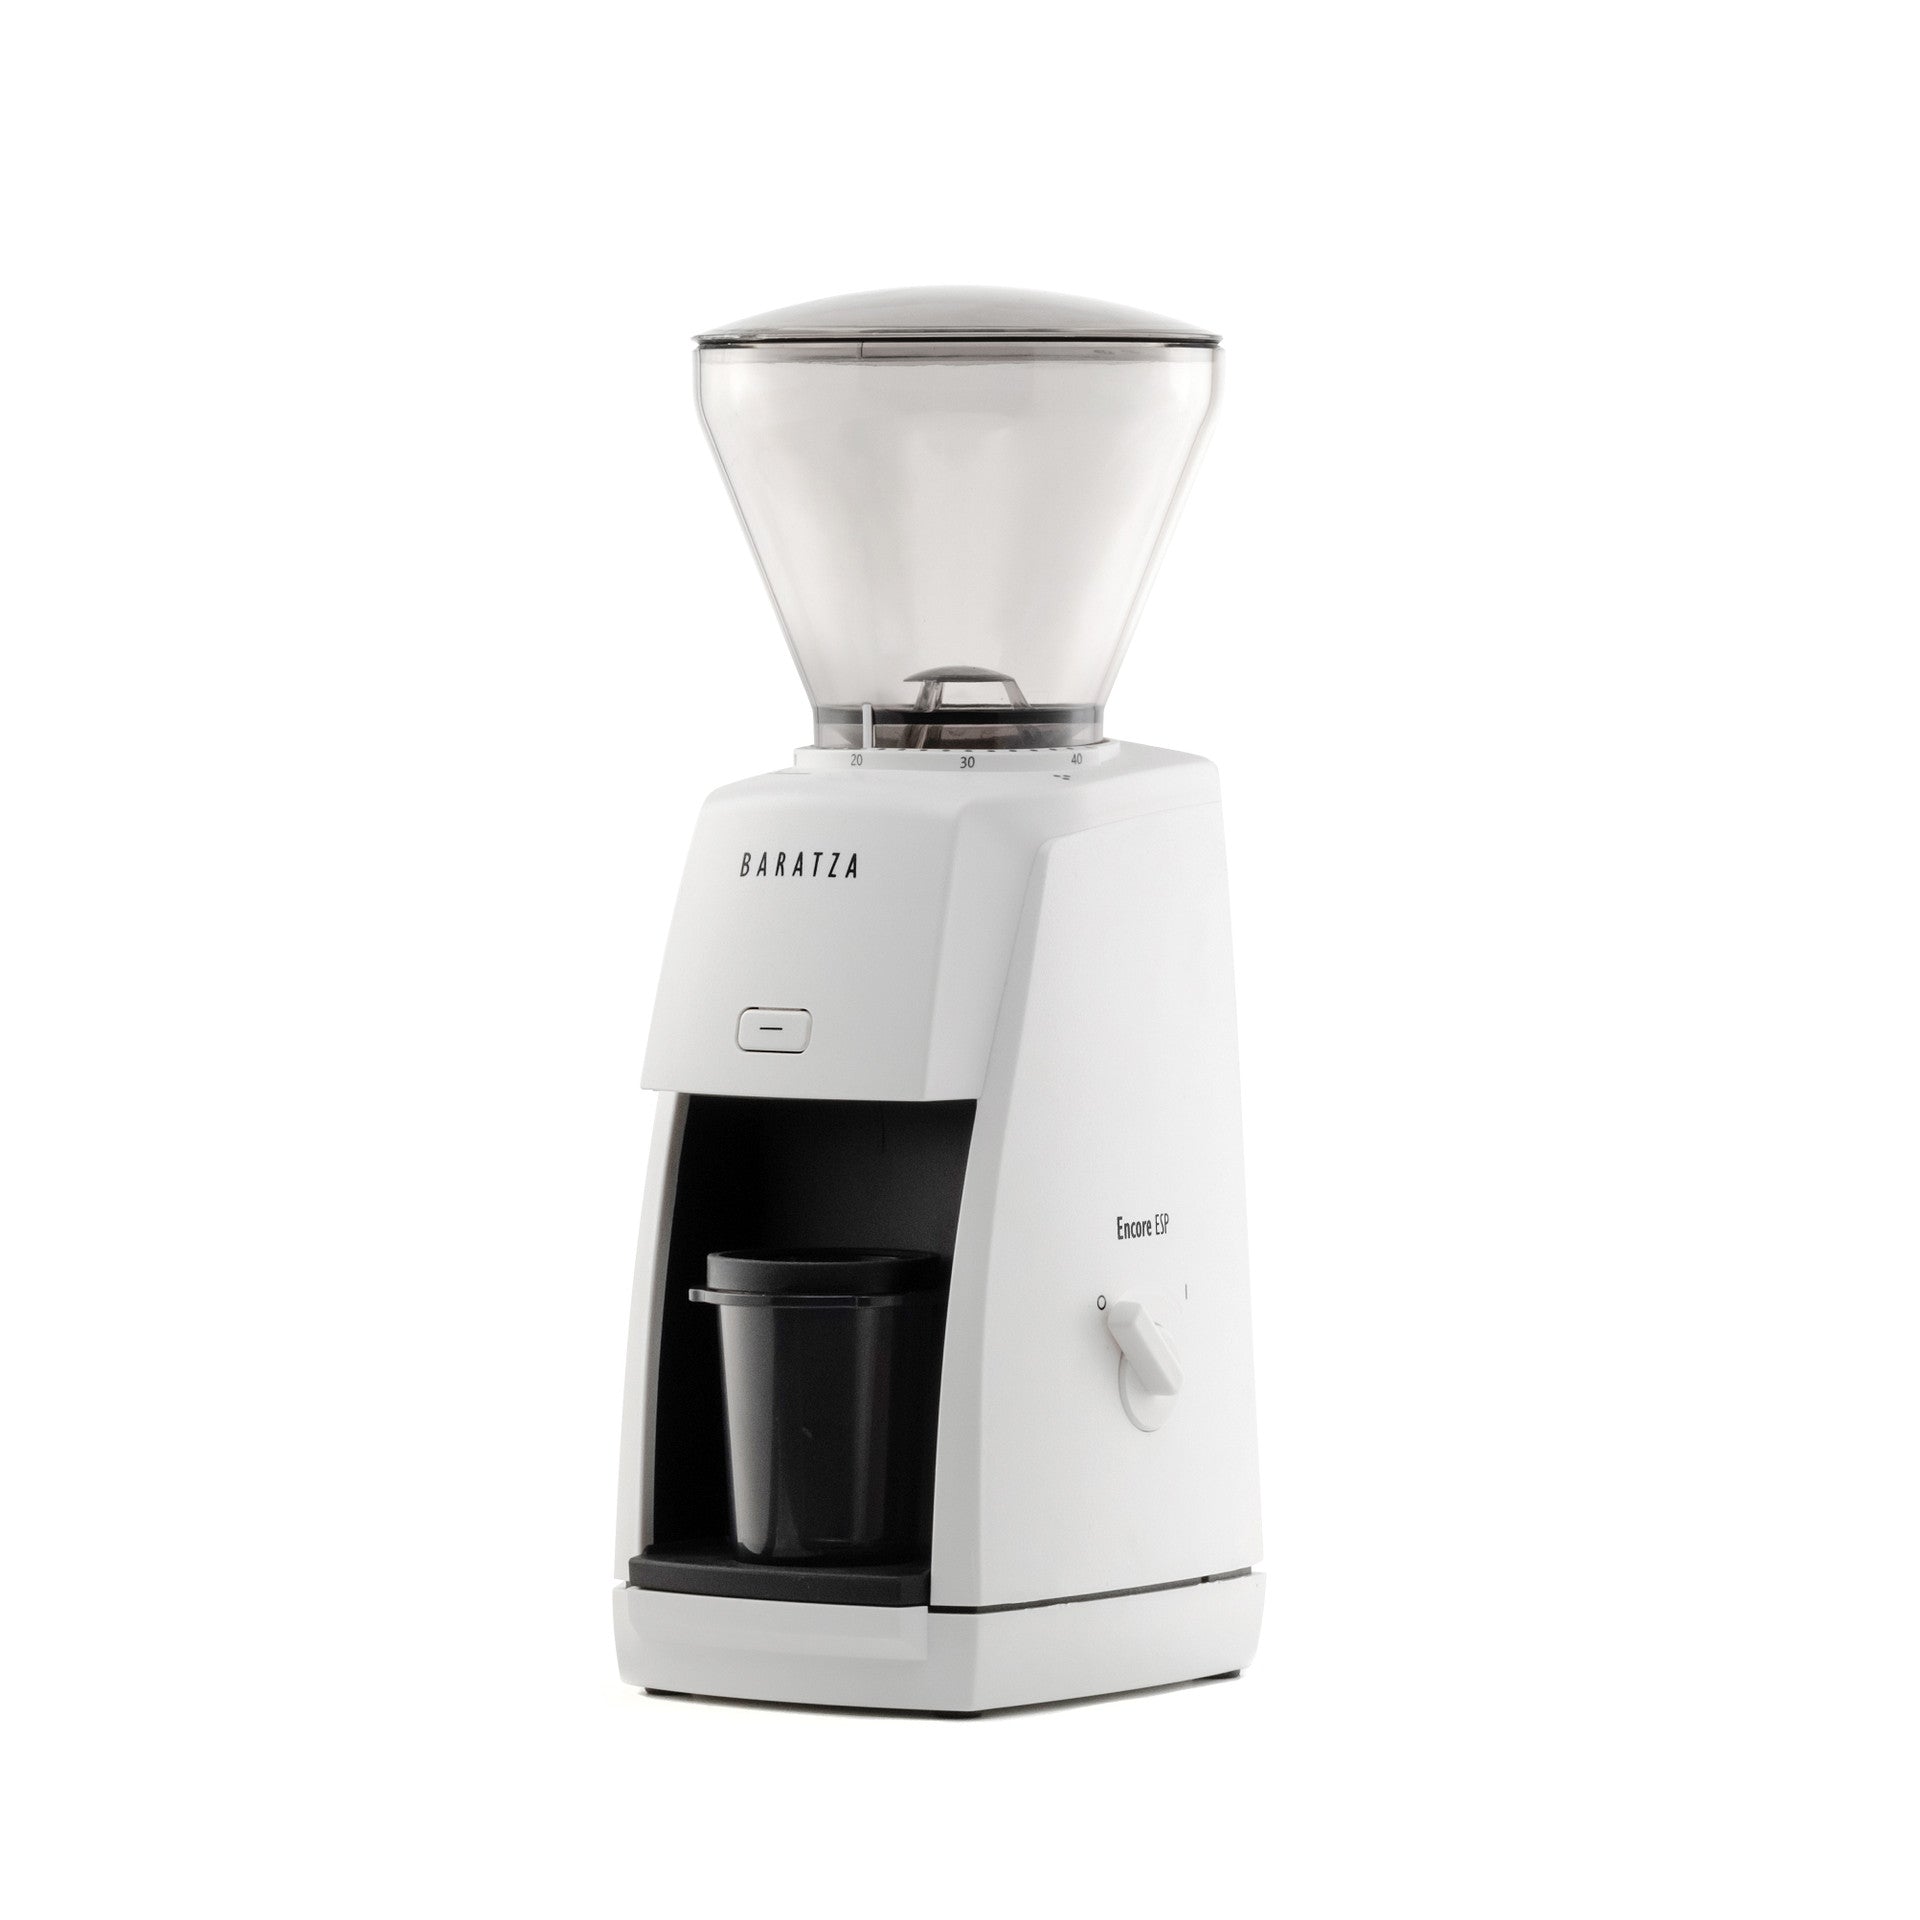 http://www.rustydogcoffee.com/cdn/shop/products/baratza-encore-esp-espresso-grinder-madison-wisconsin-white.jpg?v=1679109629